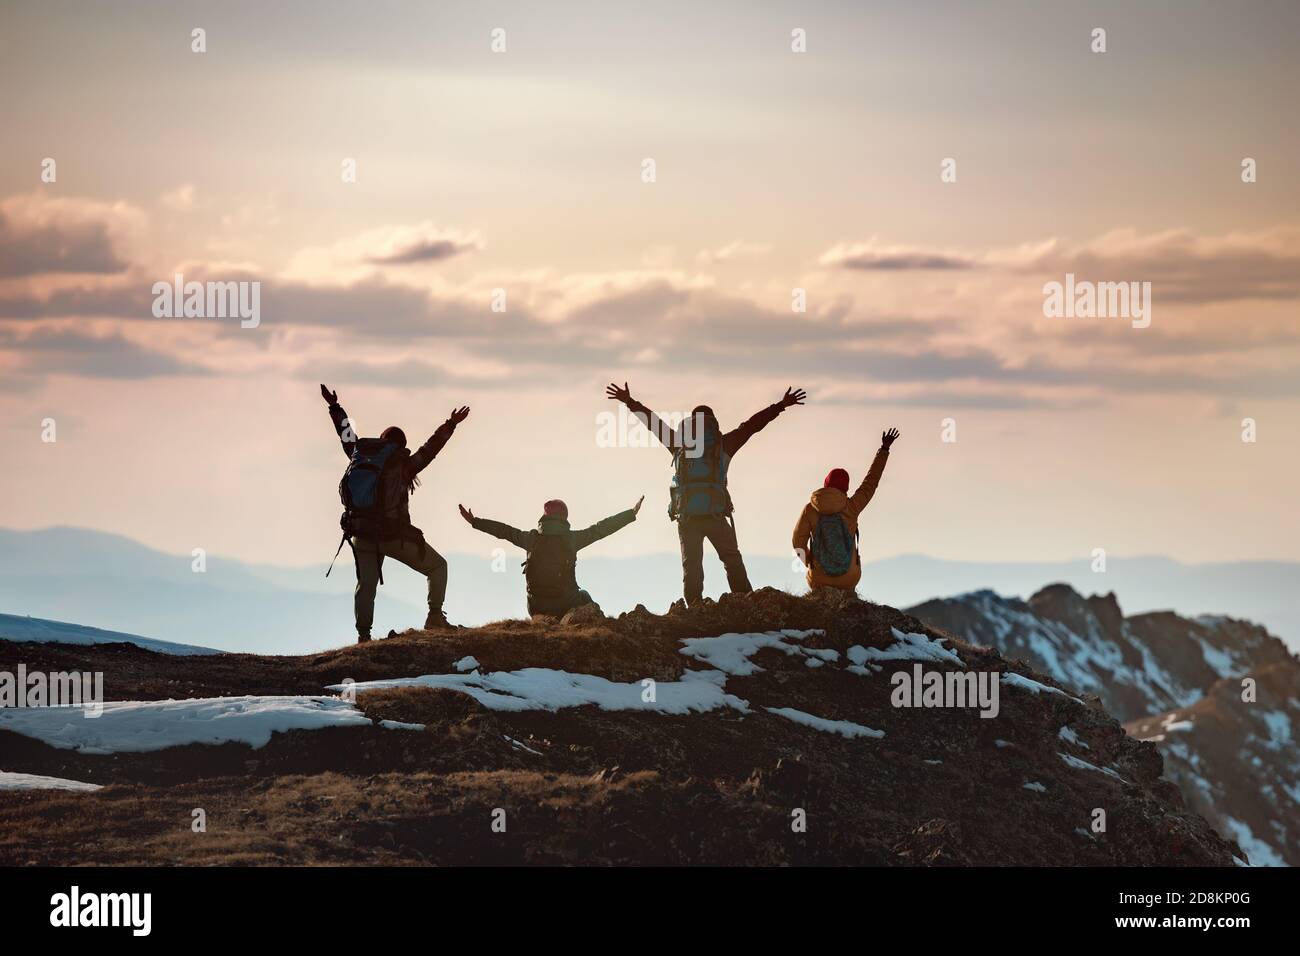 Gruppo di escursionisti felici si alza con le braccia sollevate in vincitore si posa in cima alla montagna e gode il tramonto Foto Stock